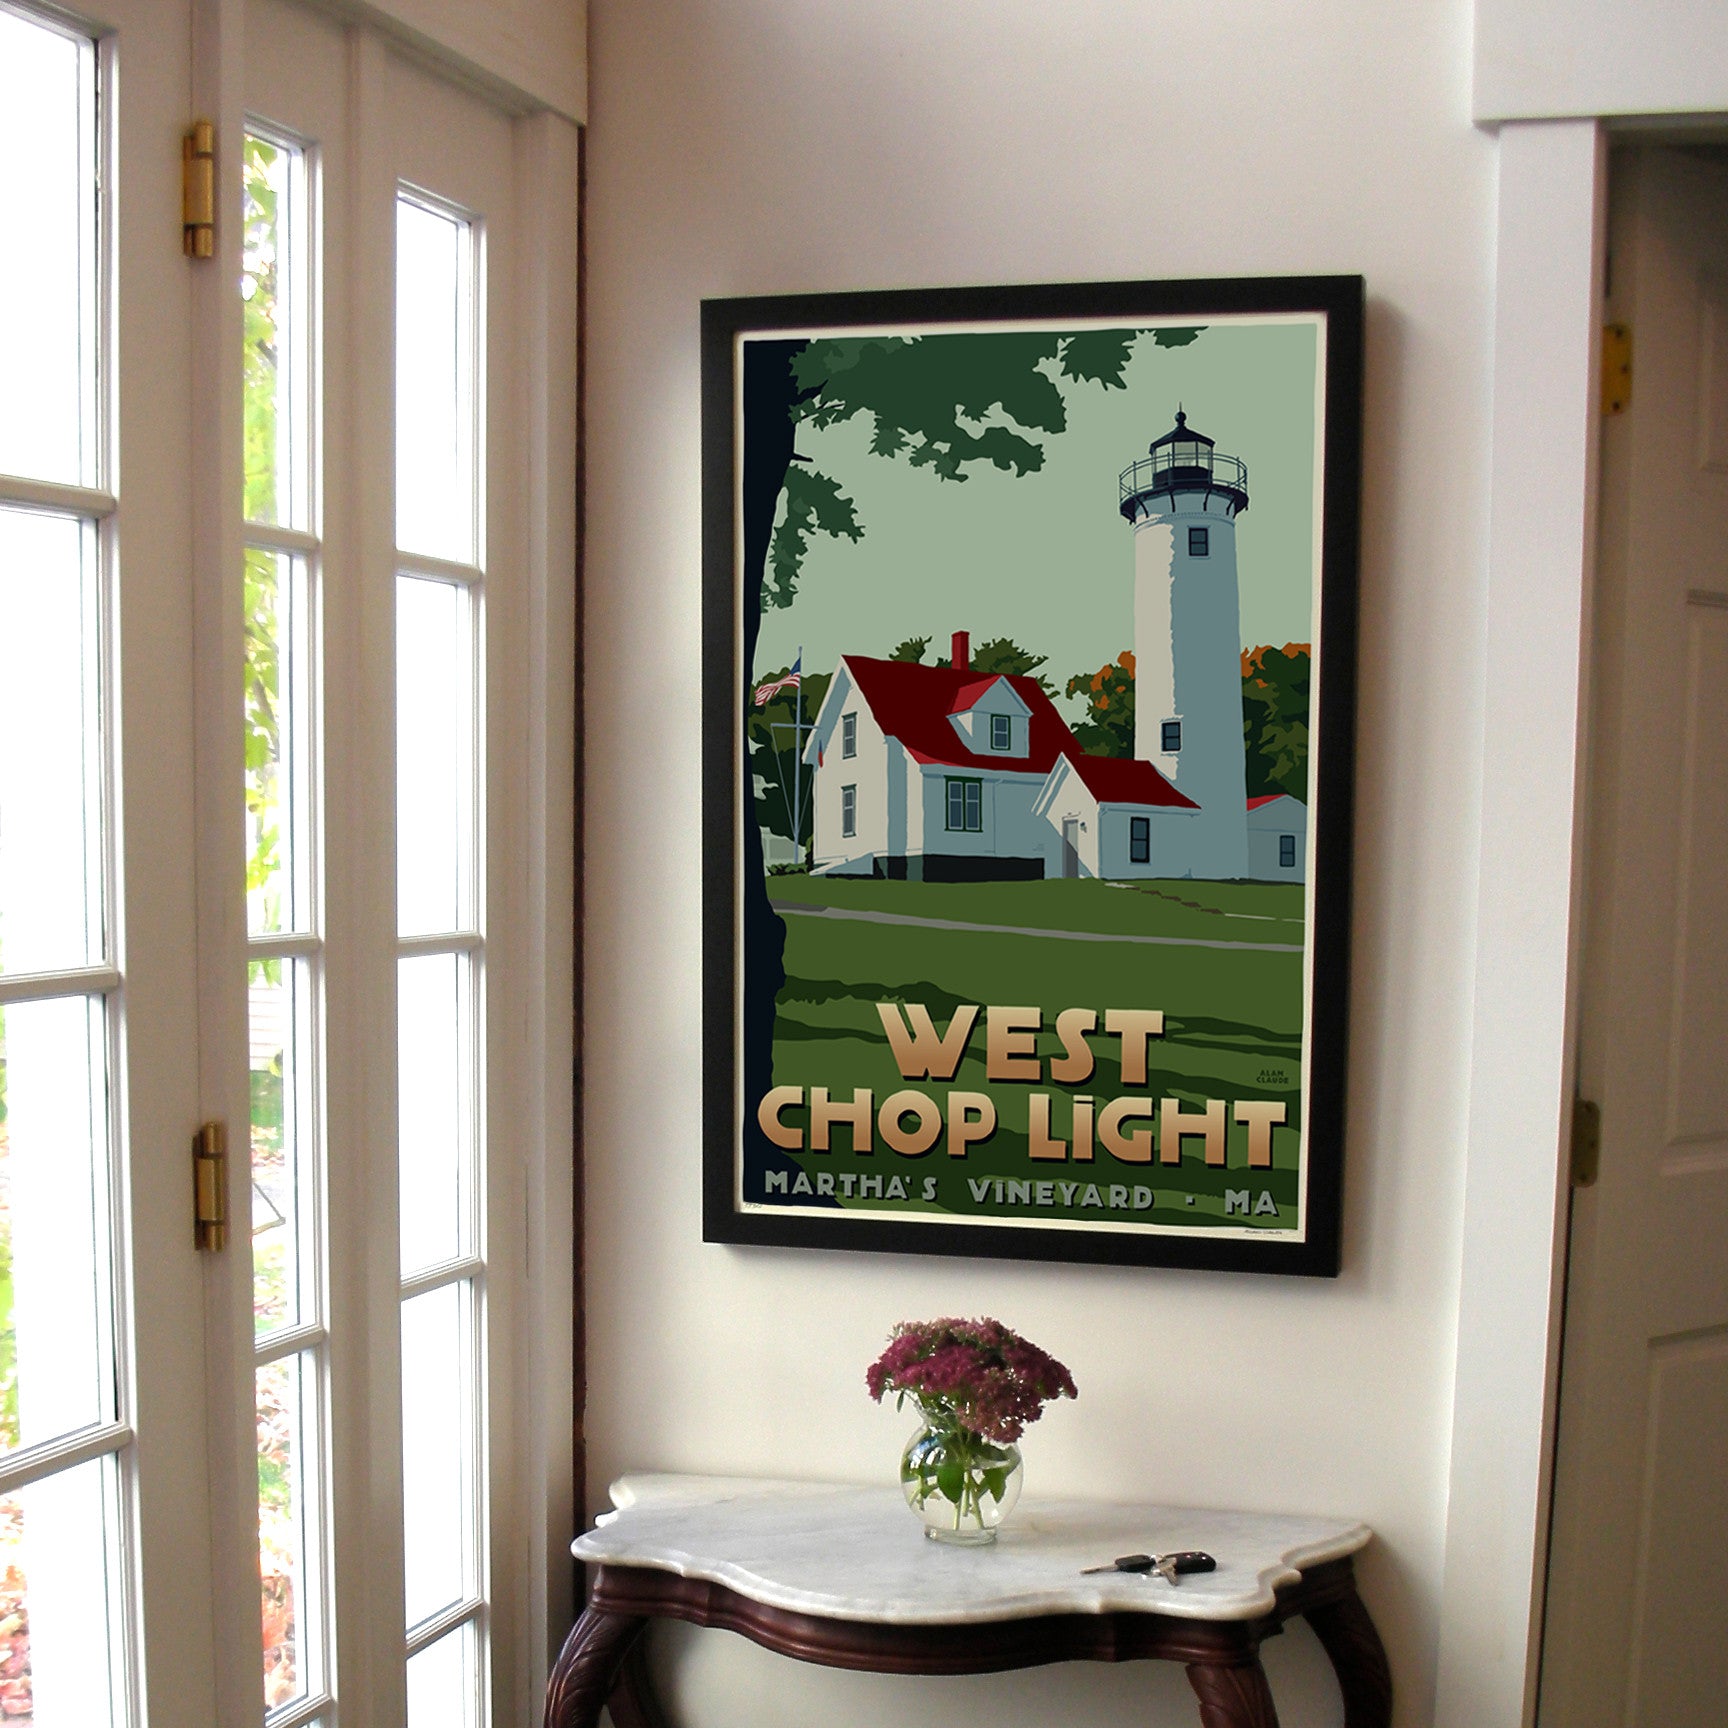 West Chop Light Art Print 24" x 36" Framed Travel Poster By Alan Claude - Massachusetts